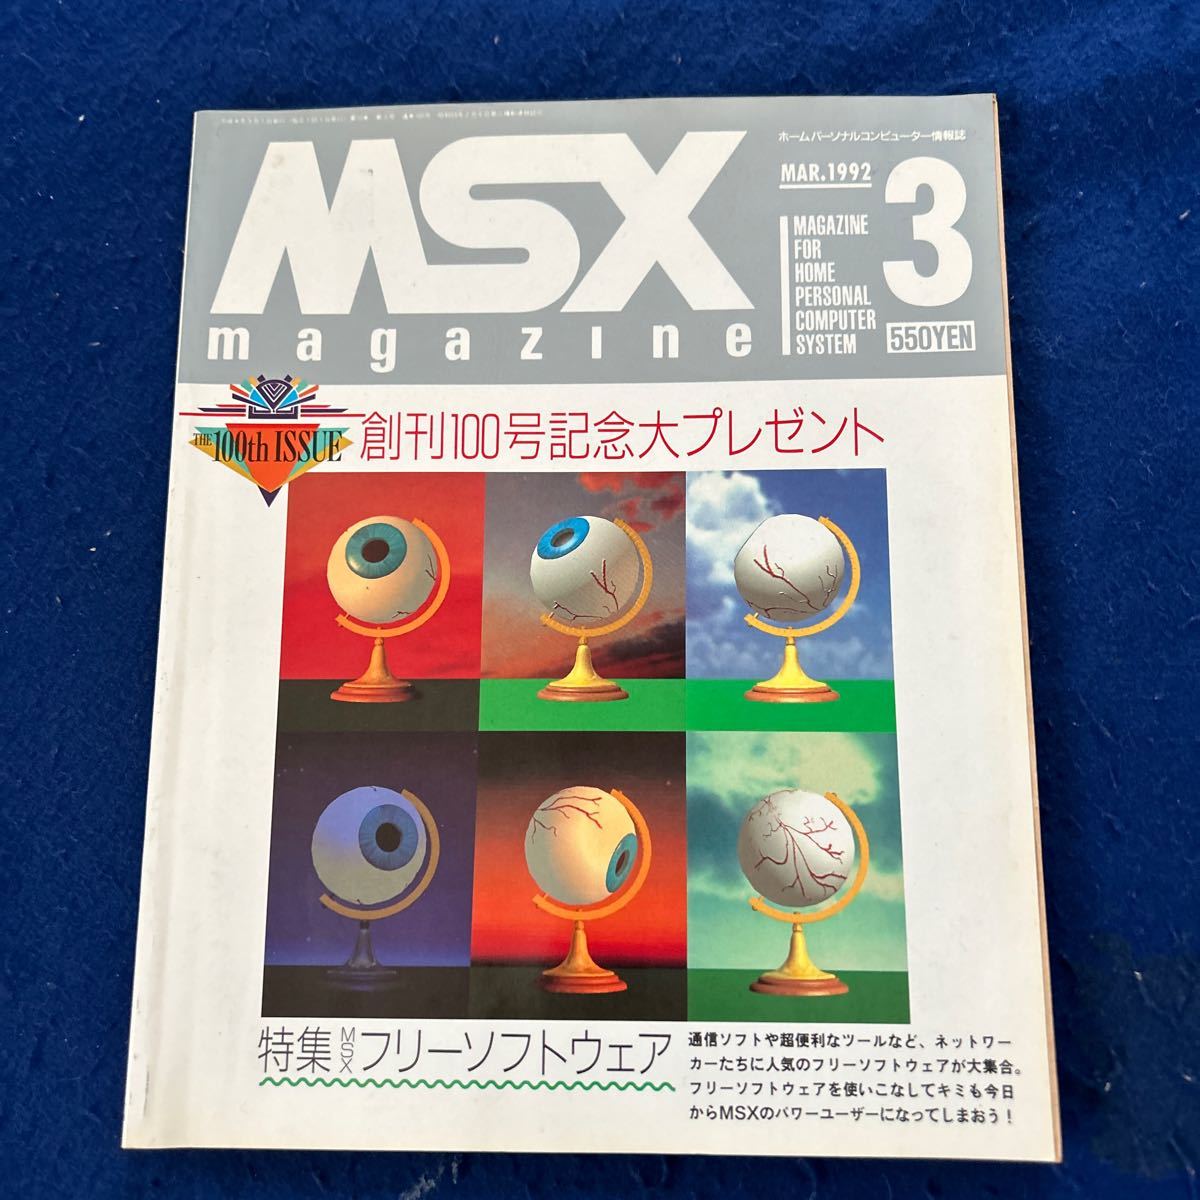 MSX MAGAZINE◆1992年3月号◆創刊100号記念◆フリーソフトウェア◆通信ソフト_画像1